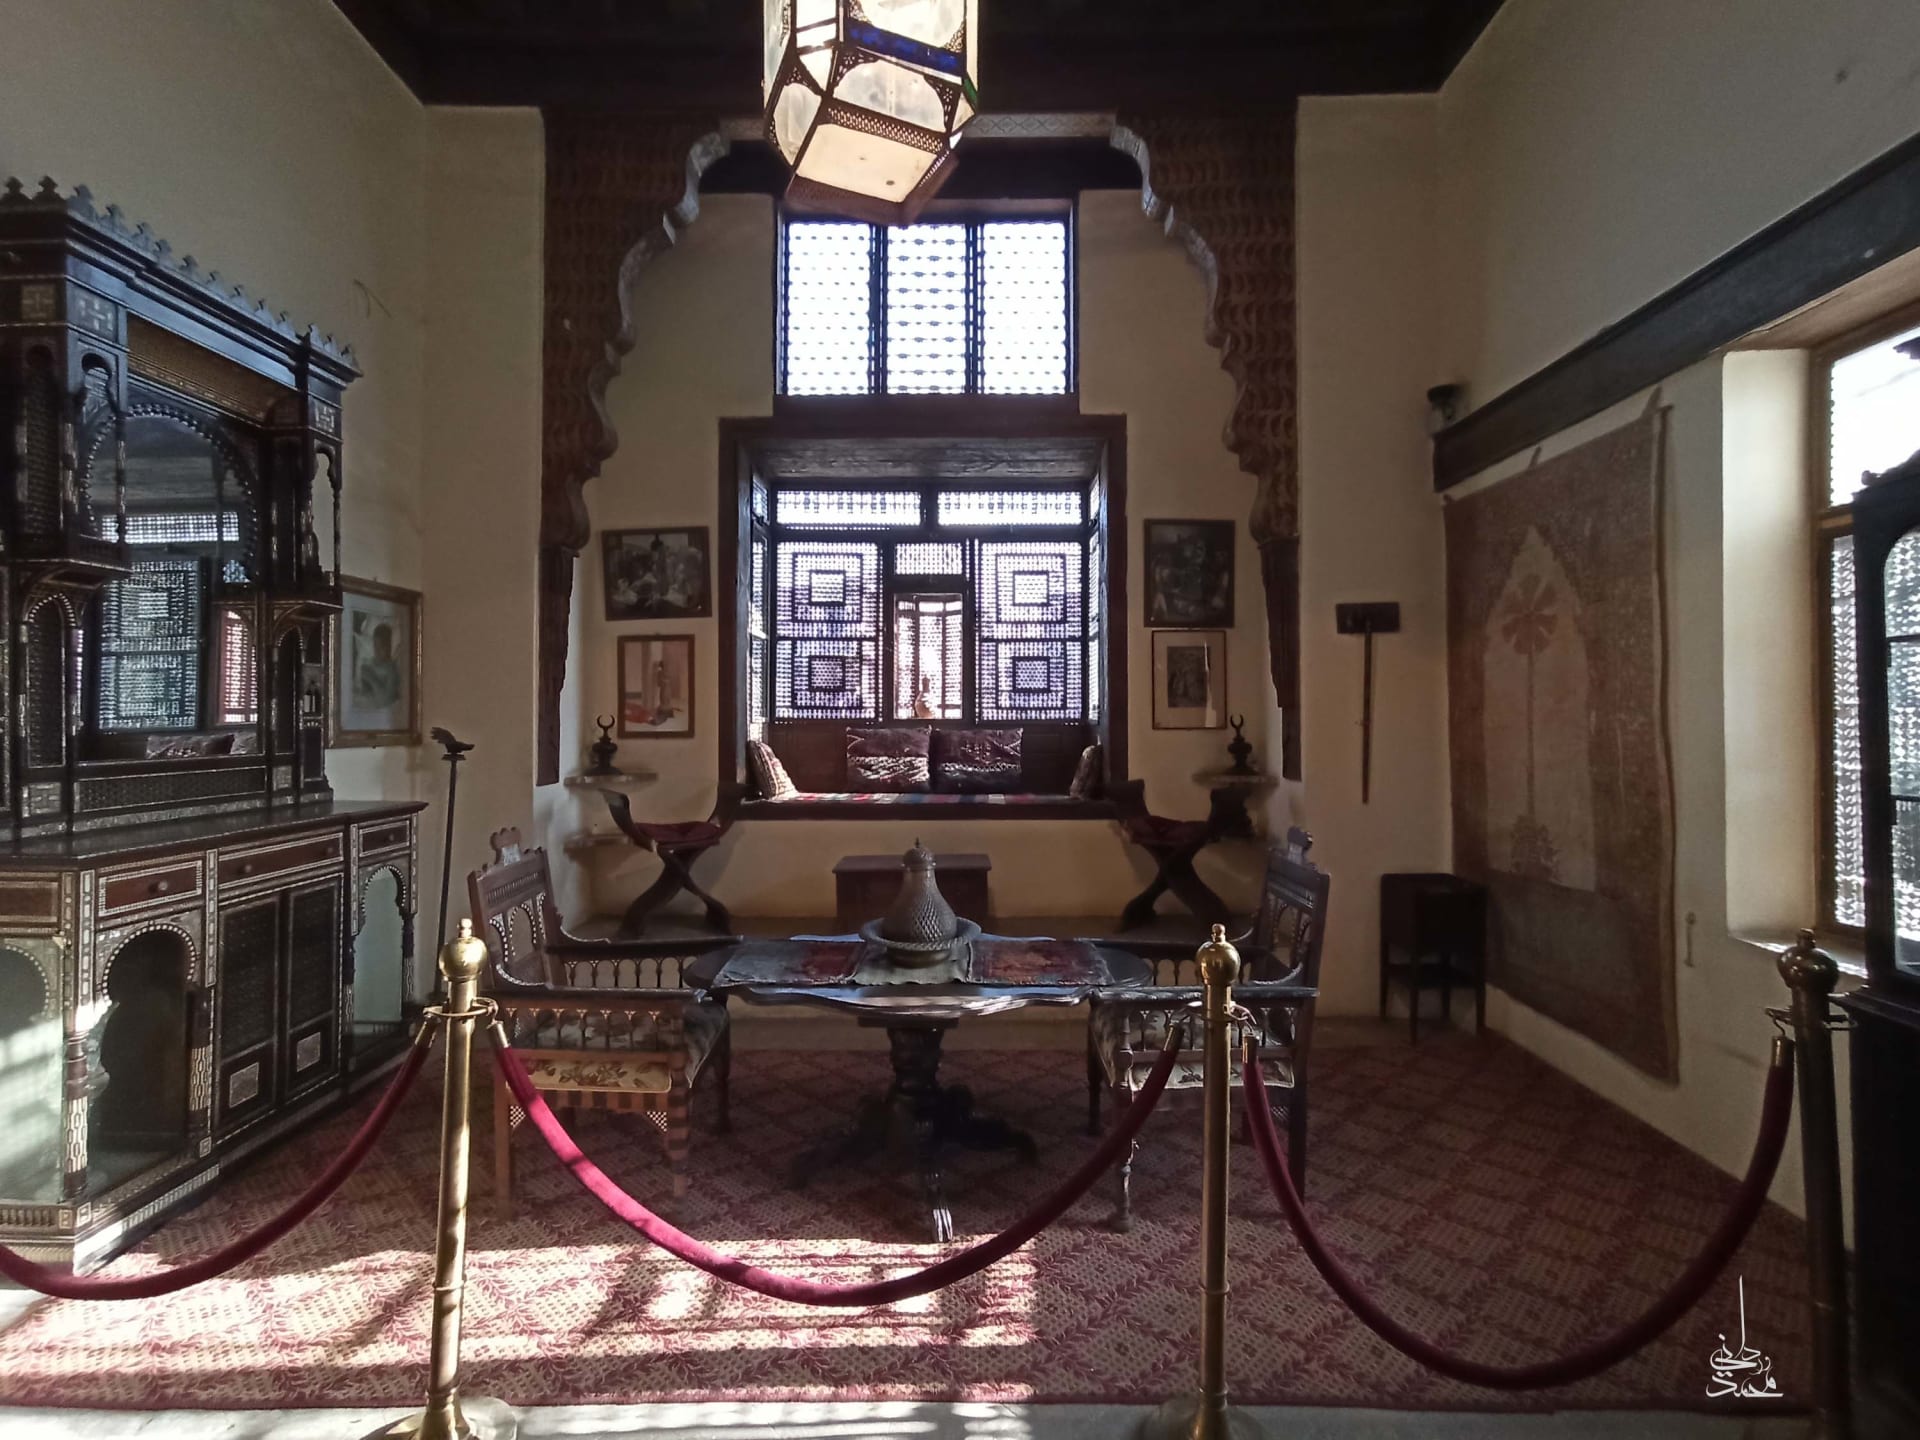 شهد أحداث فيلم جيمس بوند.. ما قصة هذا المنزل الأثري في قلب القاهرة؟